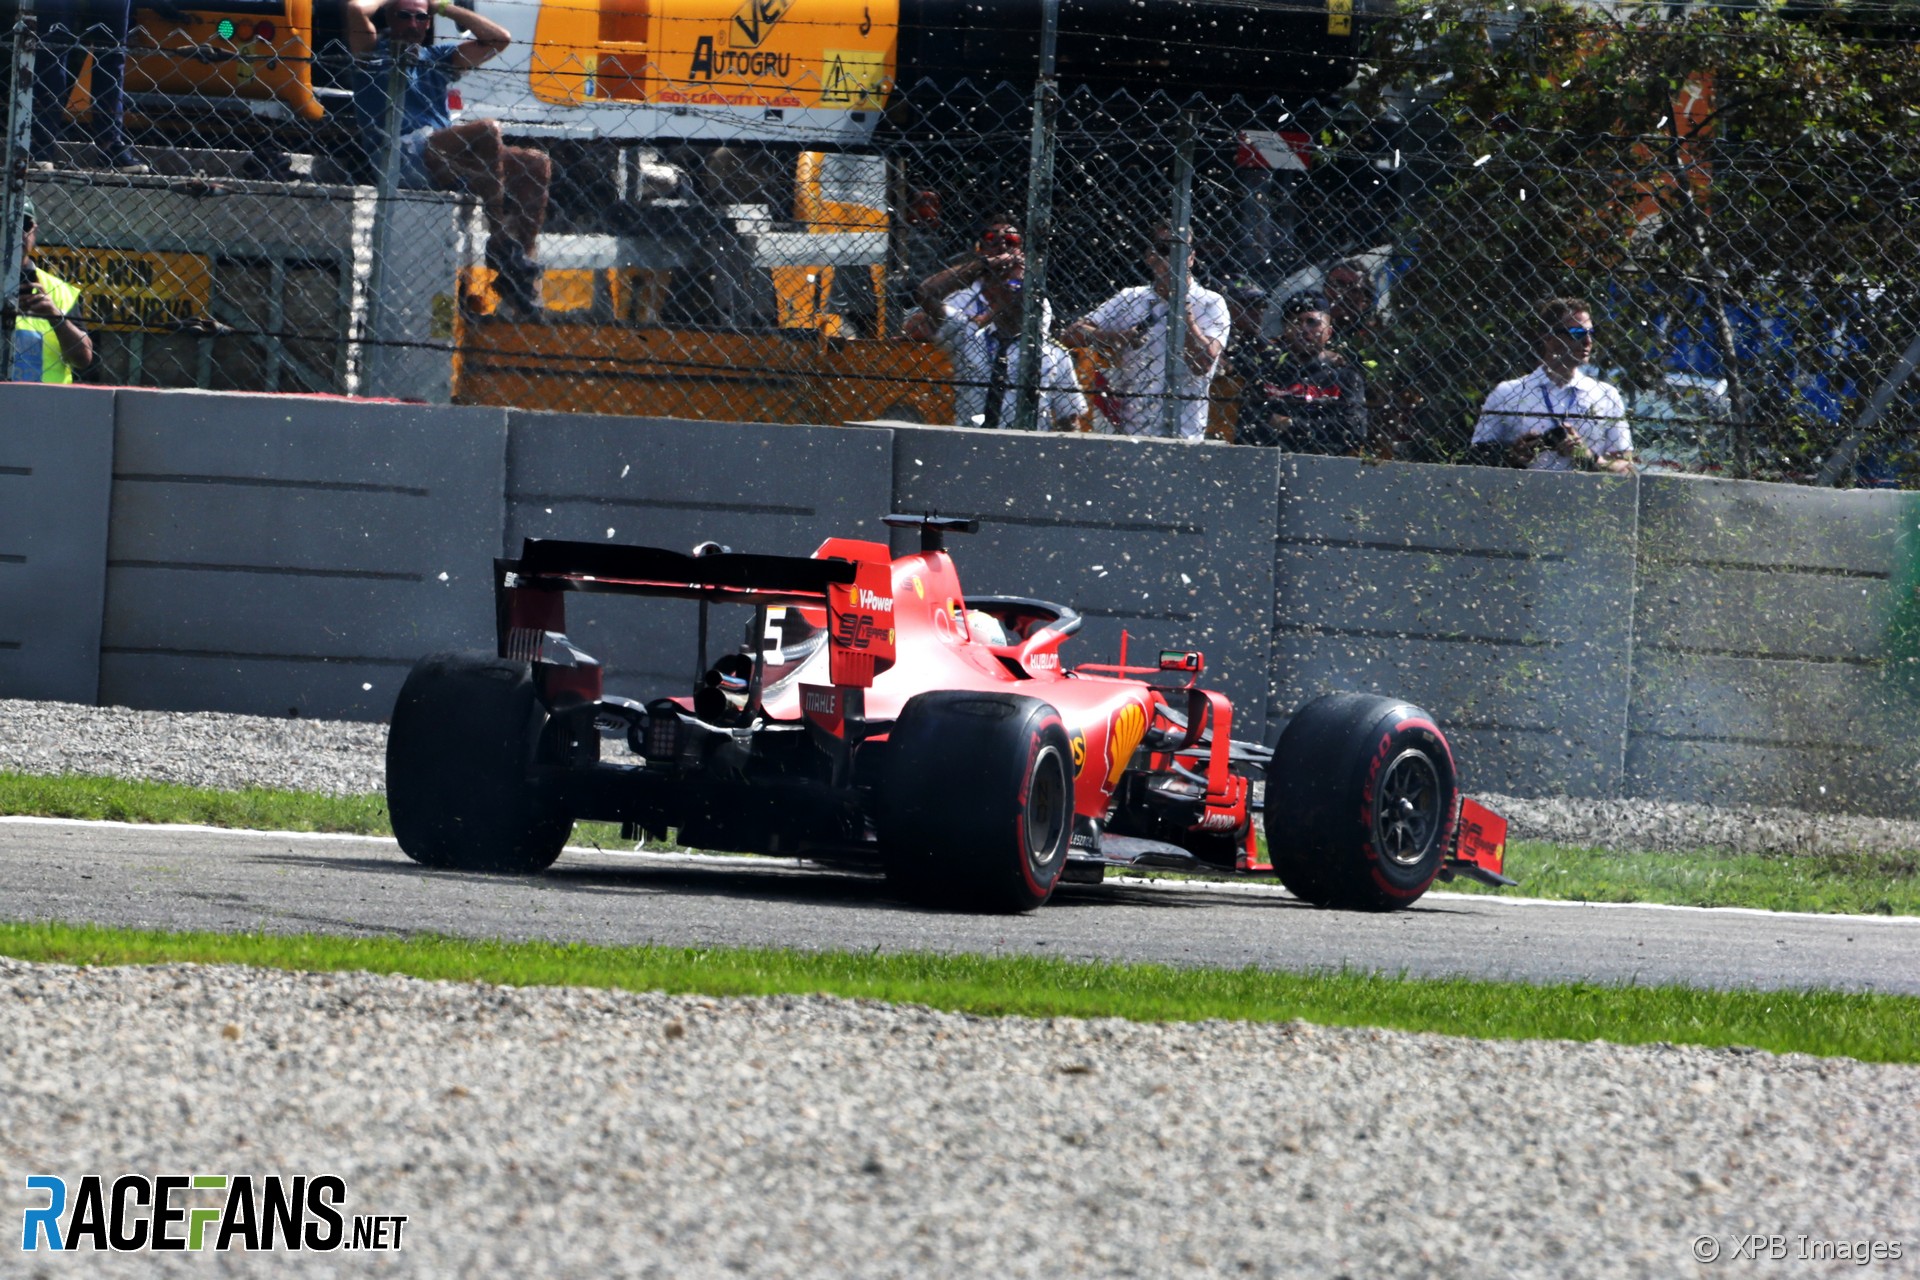 Sebastian Vettel, Ferrari, Monza, 2019